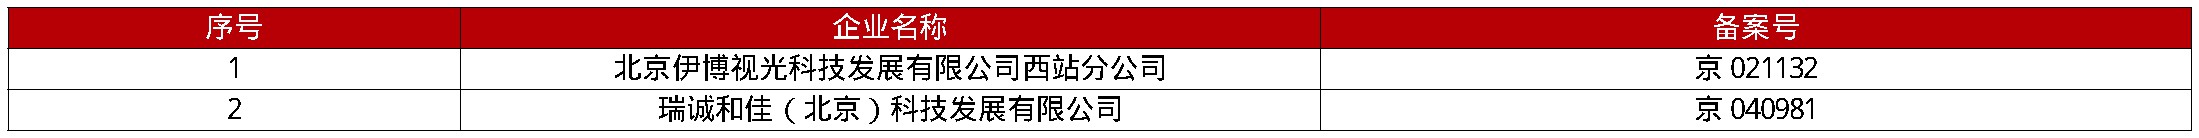 北京市食品药品监督管理局铁路车站地区分局关于拟